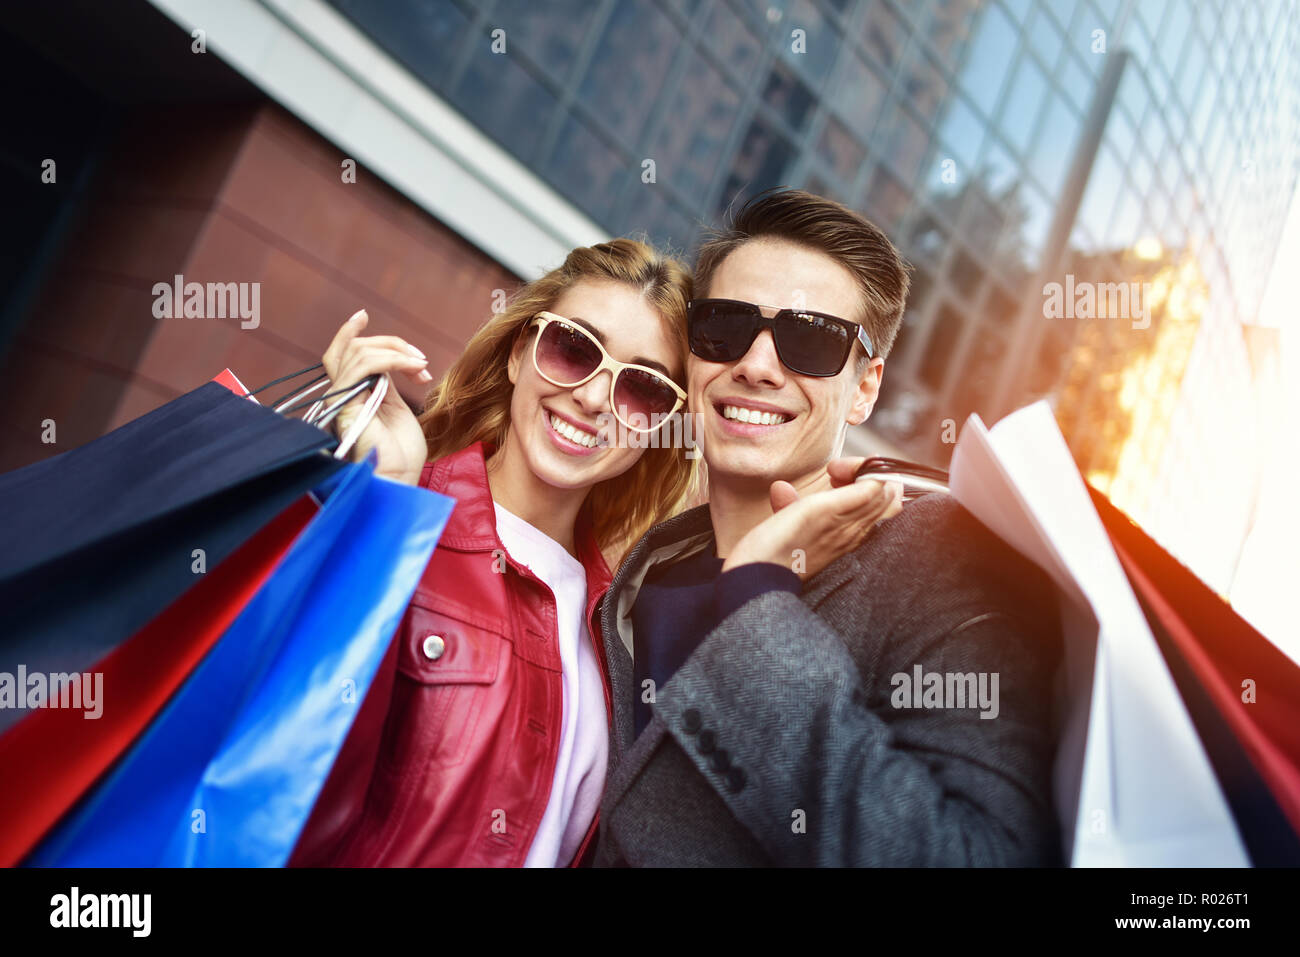 Ritratto di un giovane con borse per lo shopping in città.la gente, la vendita, l'amore e la felicità del concetto. Foto Stock